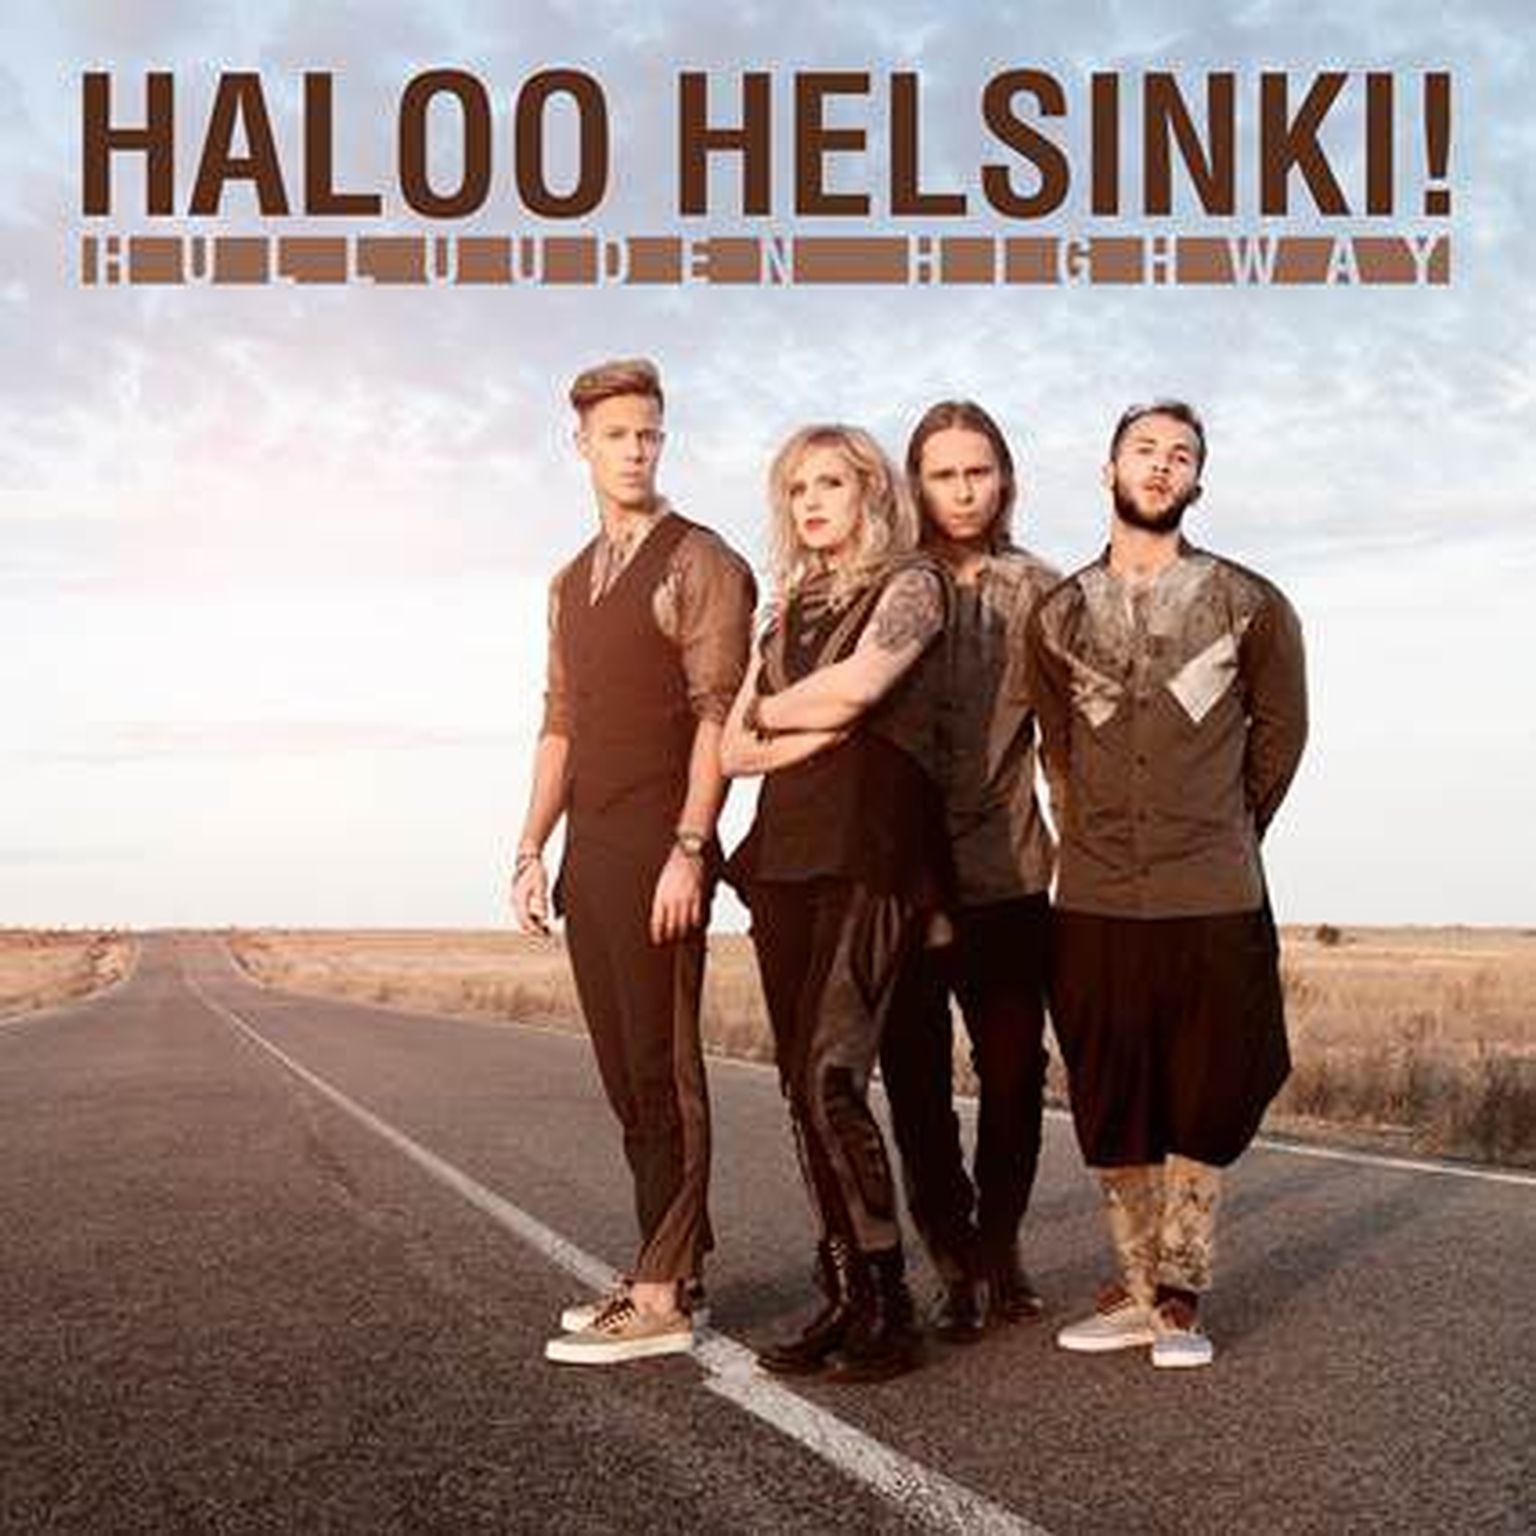 Haloo Helsinki! uus album ilmub 10. märtsil.